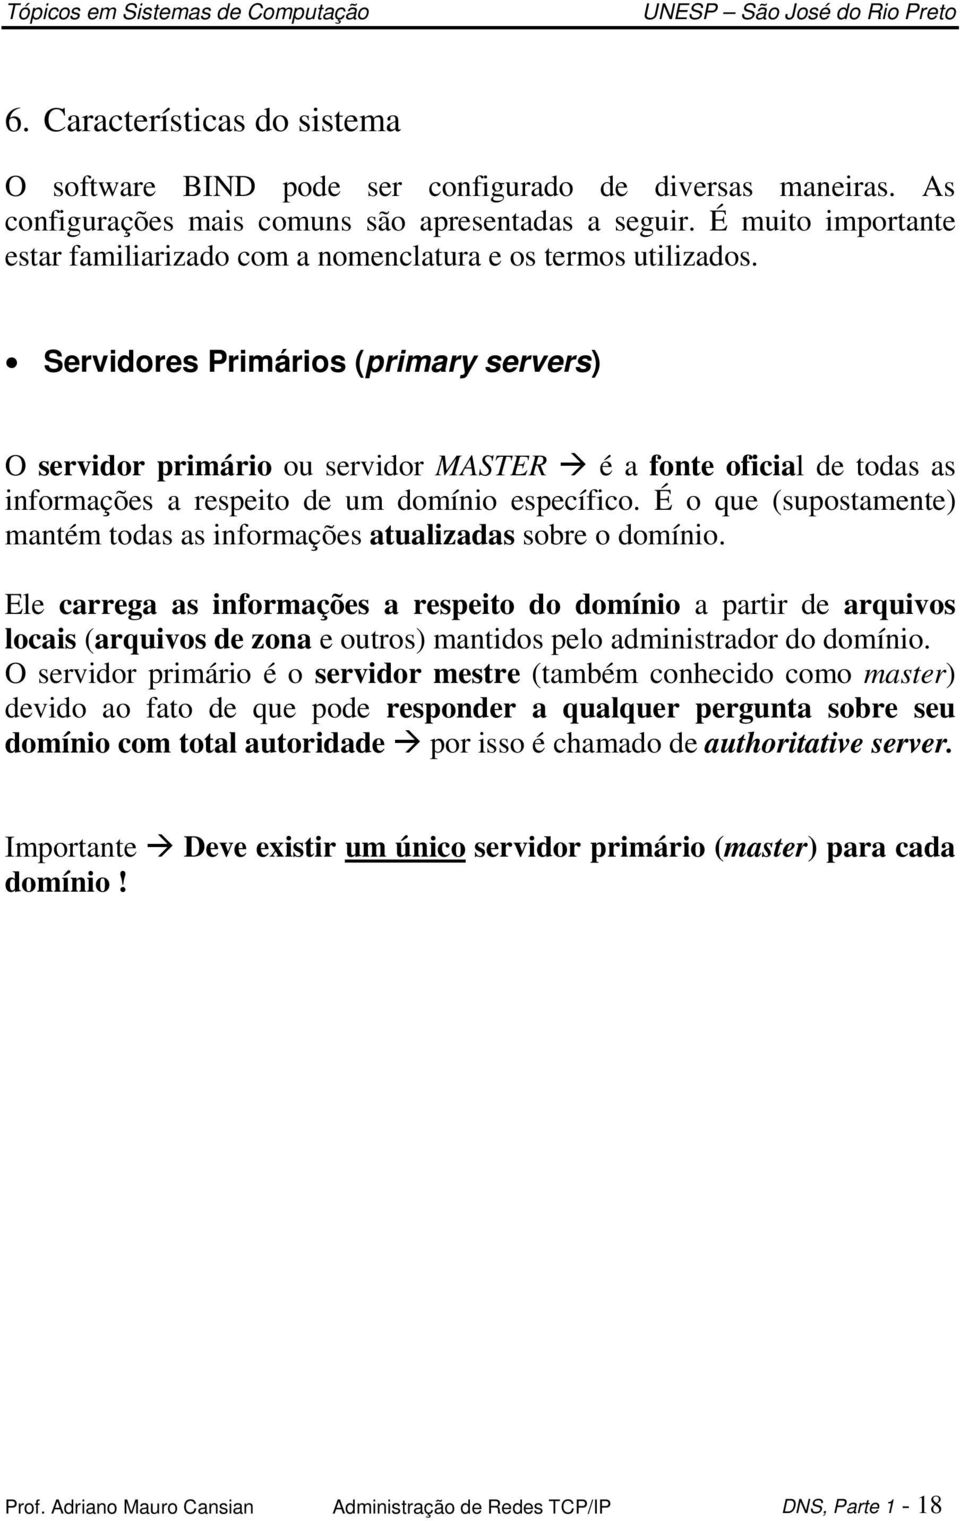 Servidores Primários (primary servers) O servidor primário ou servidor MASTER é a fonte oficial de todas as informações a respeito de um domínio específico.